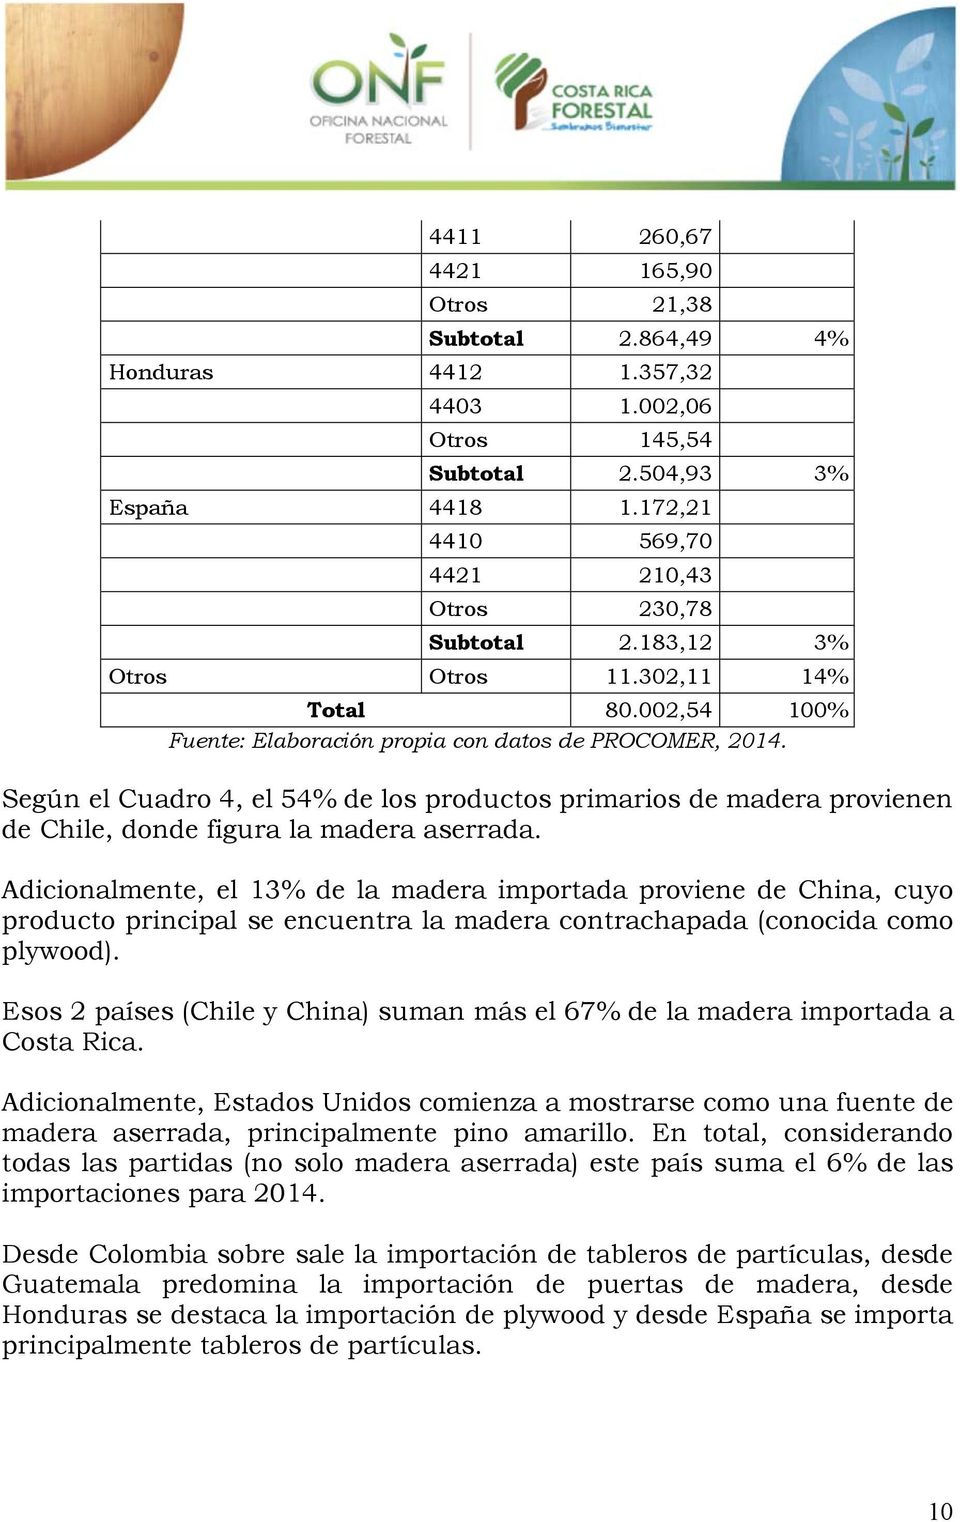 Según el Cuadro 4, el 54% de los productos primarios de madera provienen de Chile, donde figura la madera aserrada.